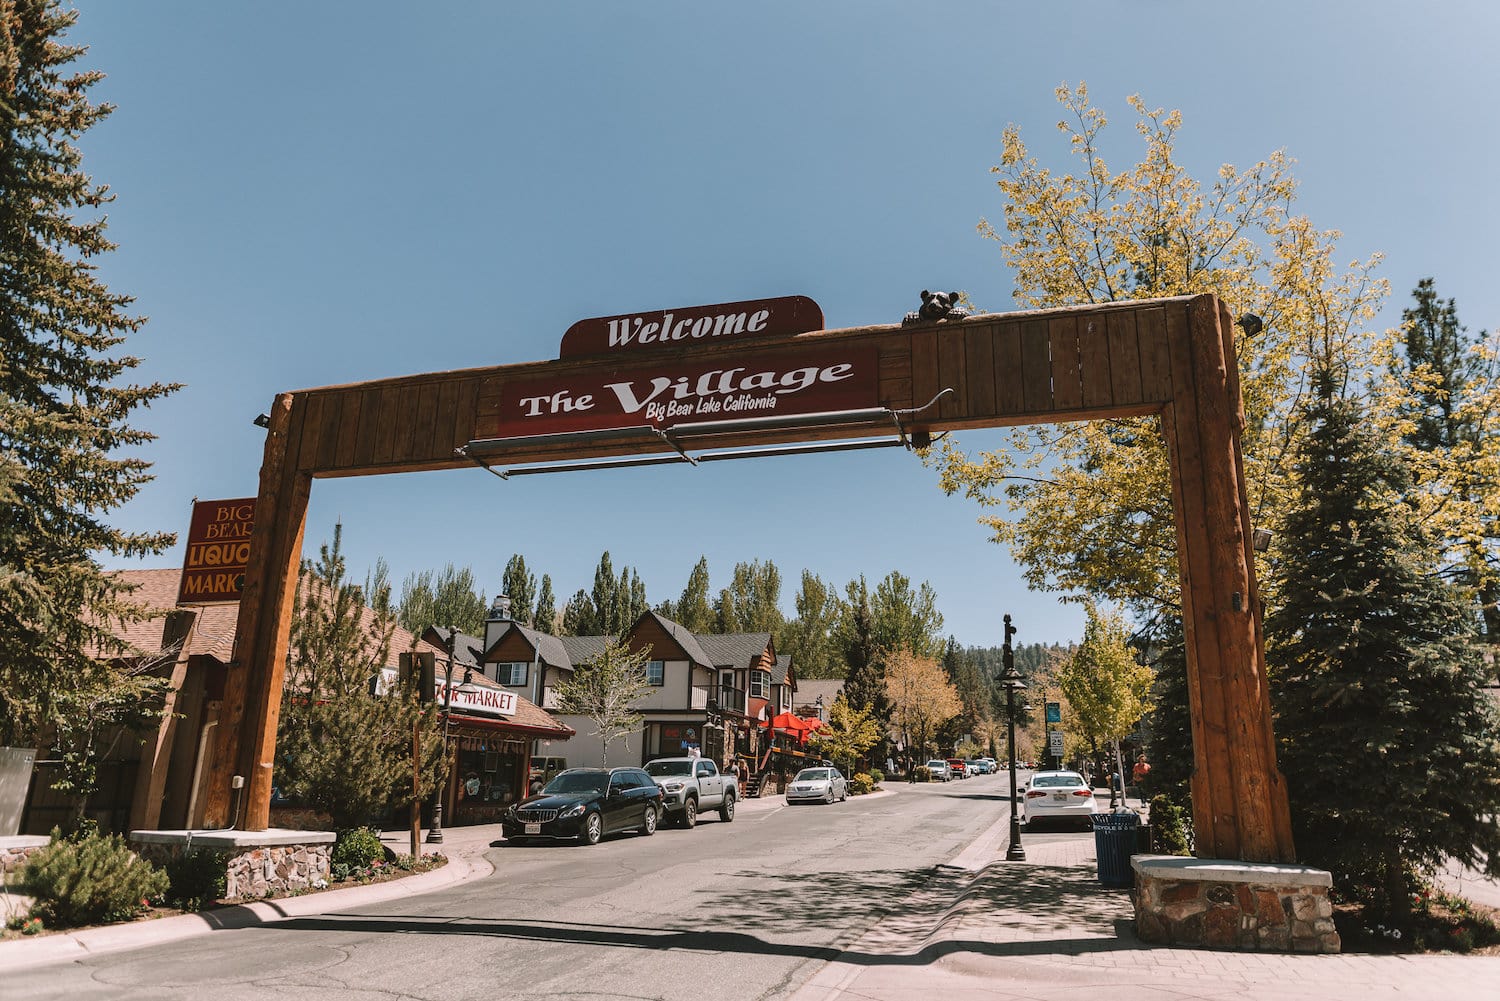 Signo de Big Bear Village